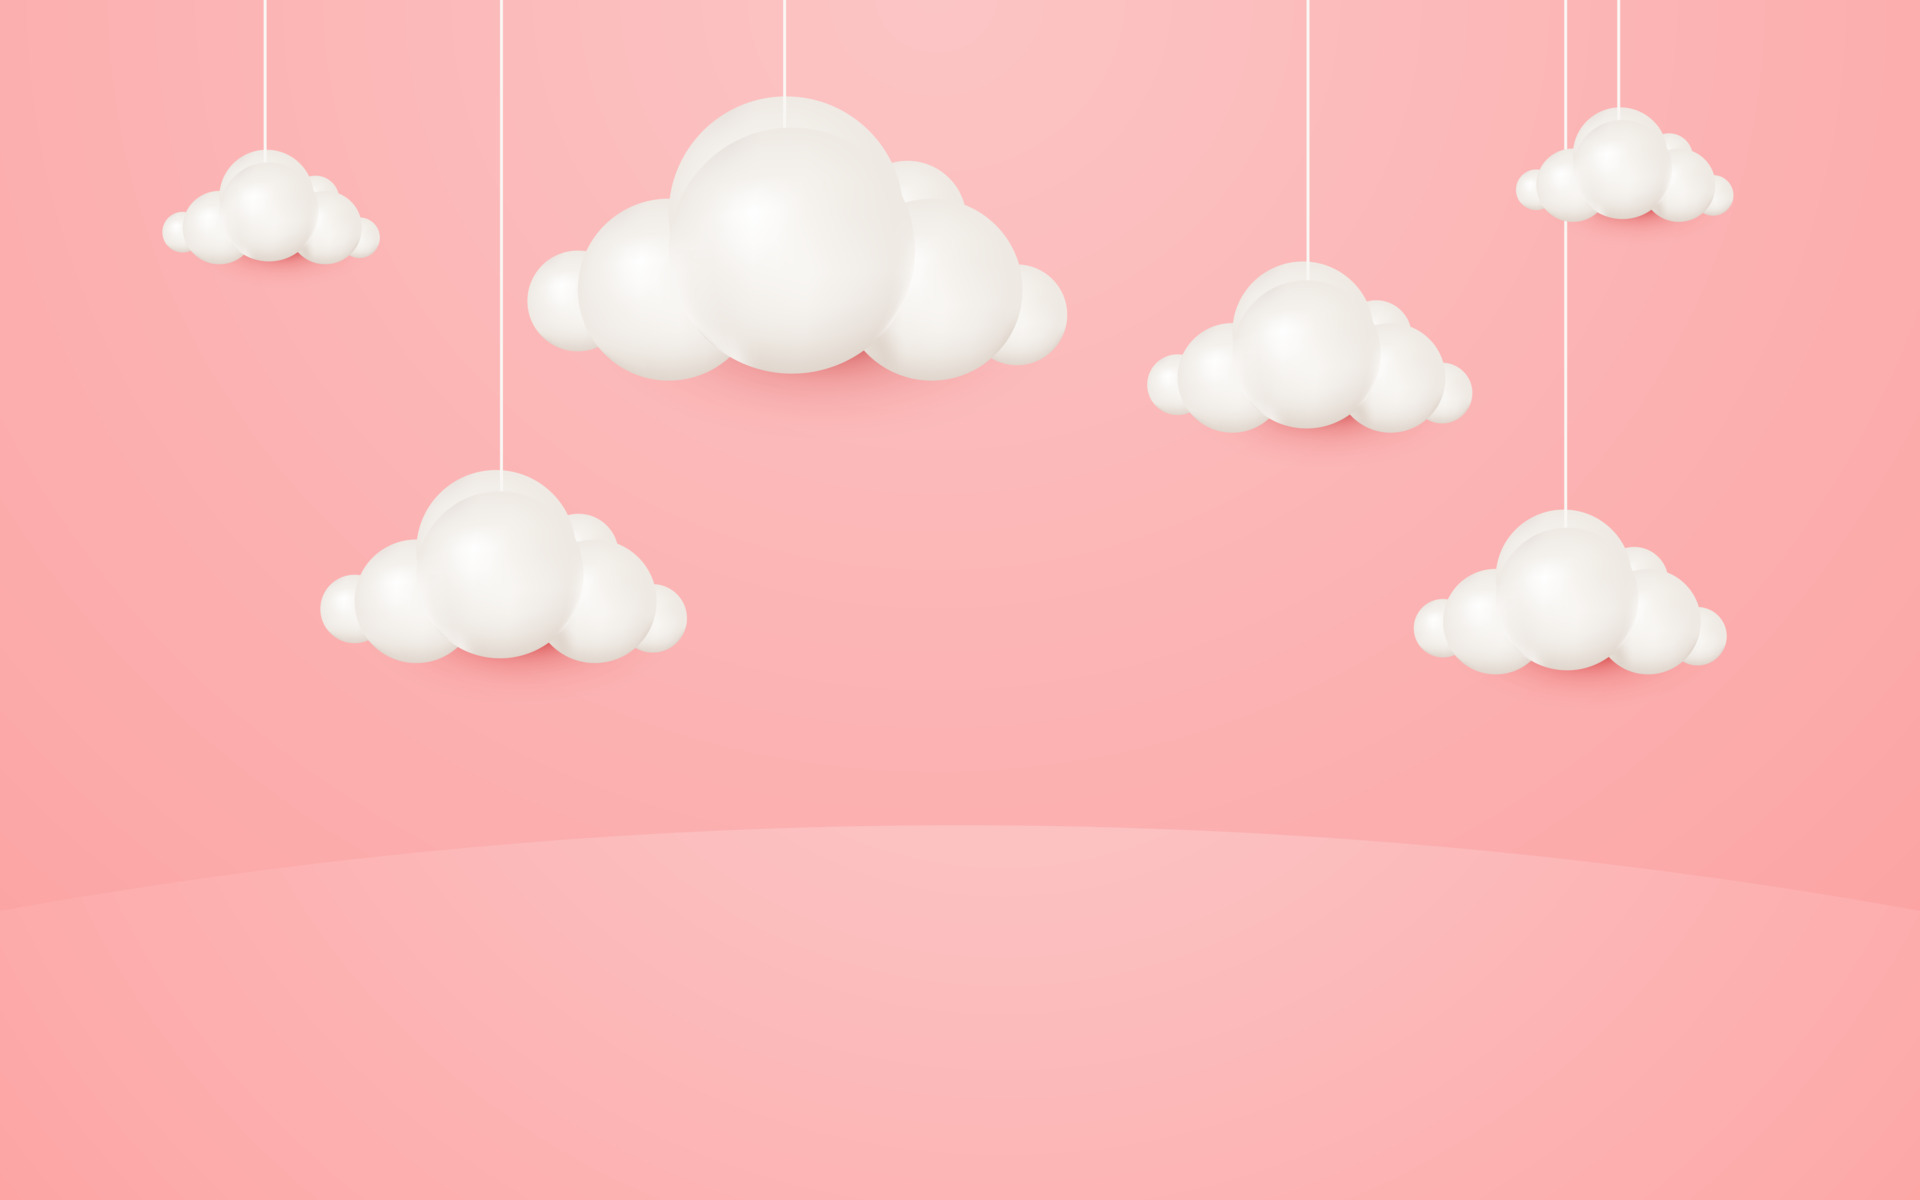 Những đám mây treo phong cách hoạt hình 3D trên nền hồng pastel mang lại cảm giác sống động và trẻ trung cho màn hình của bạn. Bạn sẽ không muốn bỏ lỡ ảnh “Đám mây treo phong cách hoạt hình 3D trên nền hồng pastel” đang chờ bạn khám phá.